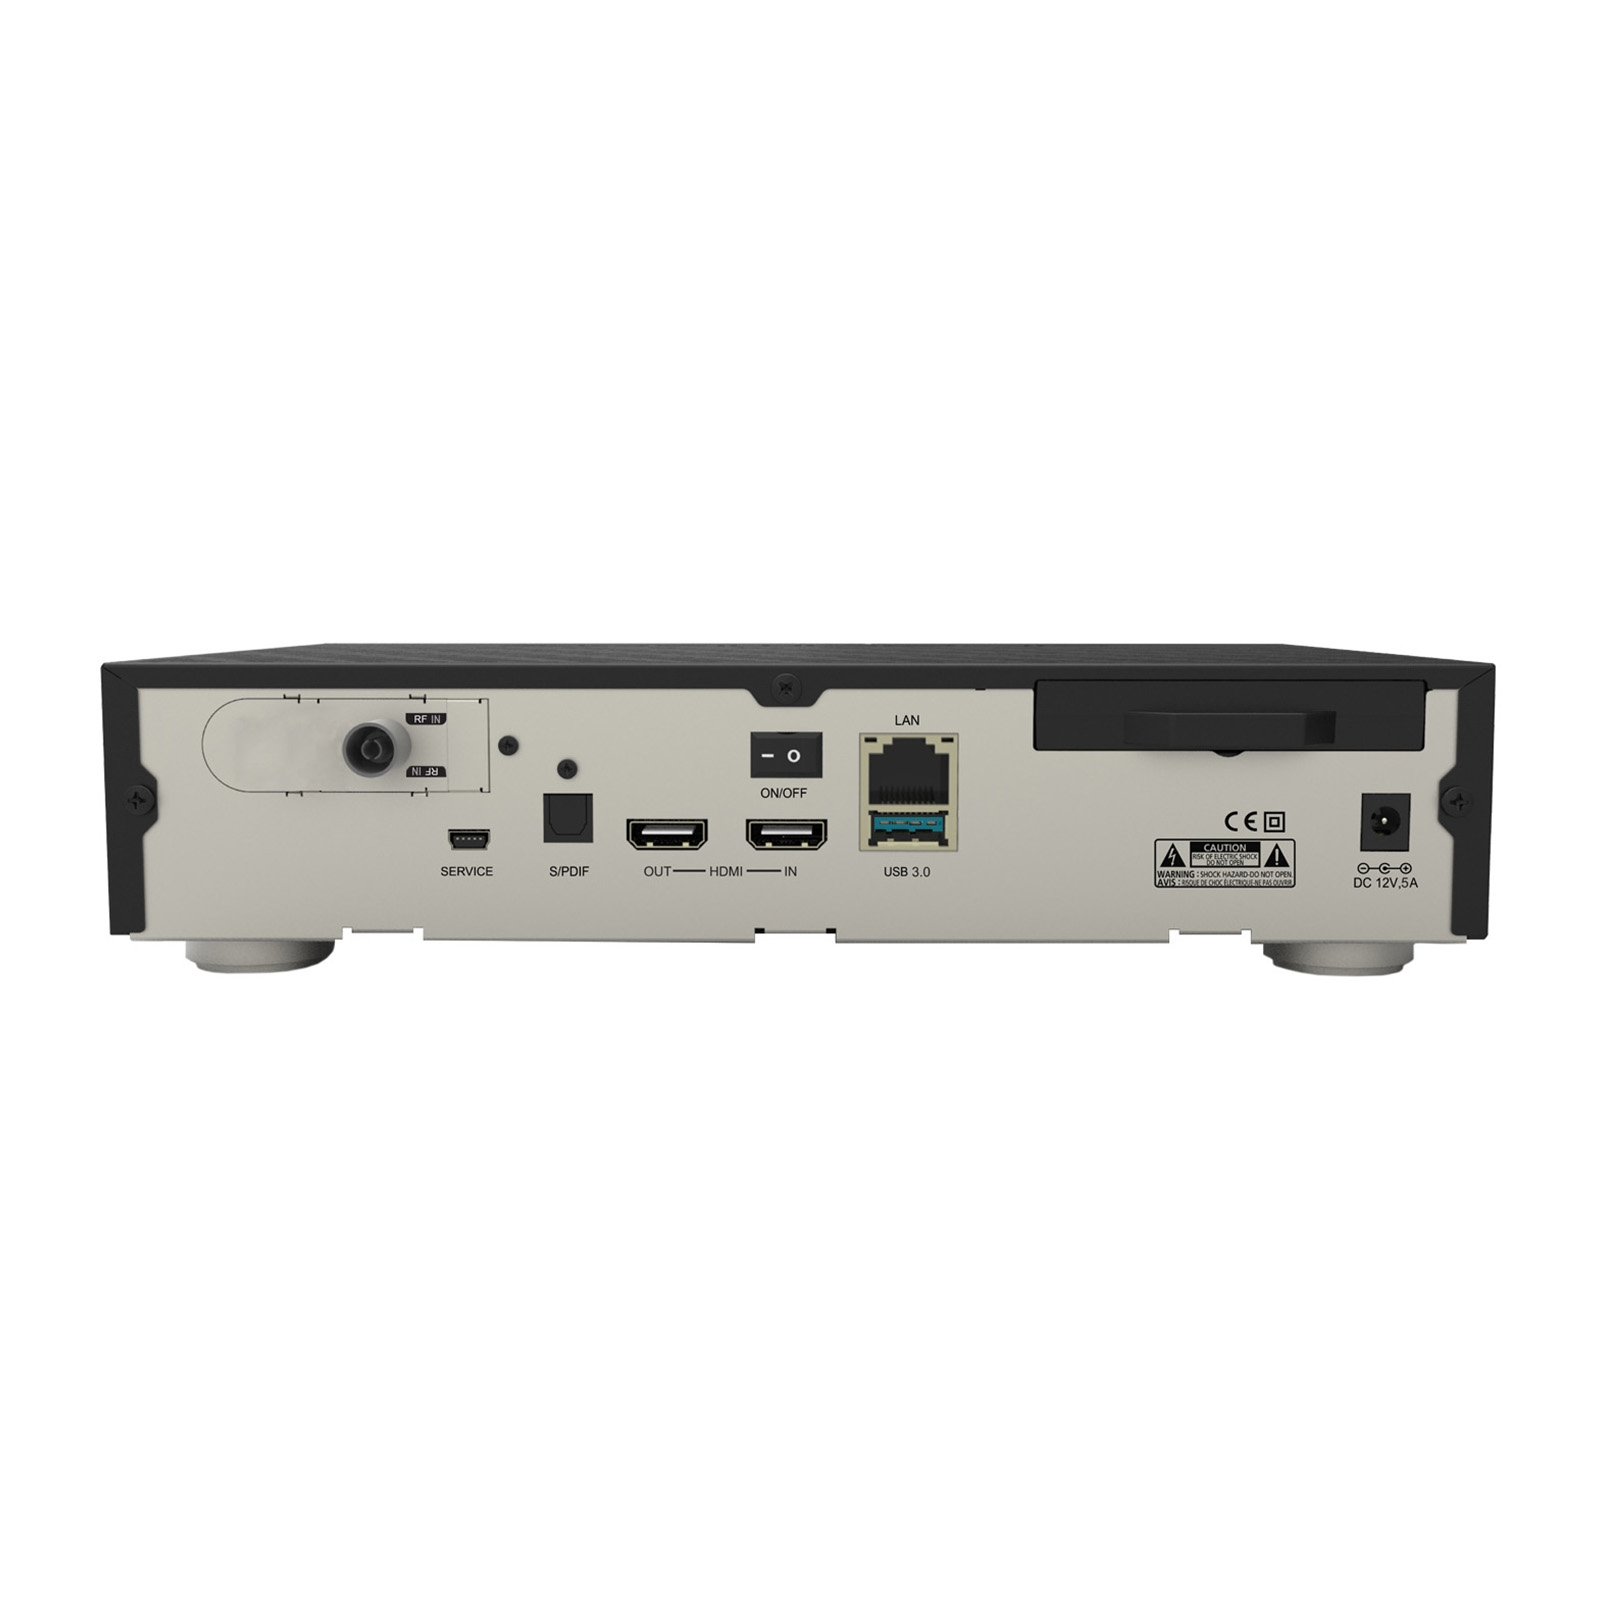 500GB Twin (PVR-Funktion, Schwarz) DM900 Kabel-Receiver MULTIMEDIA Tuner, FBC RC20 1xDVB-C DREAM